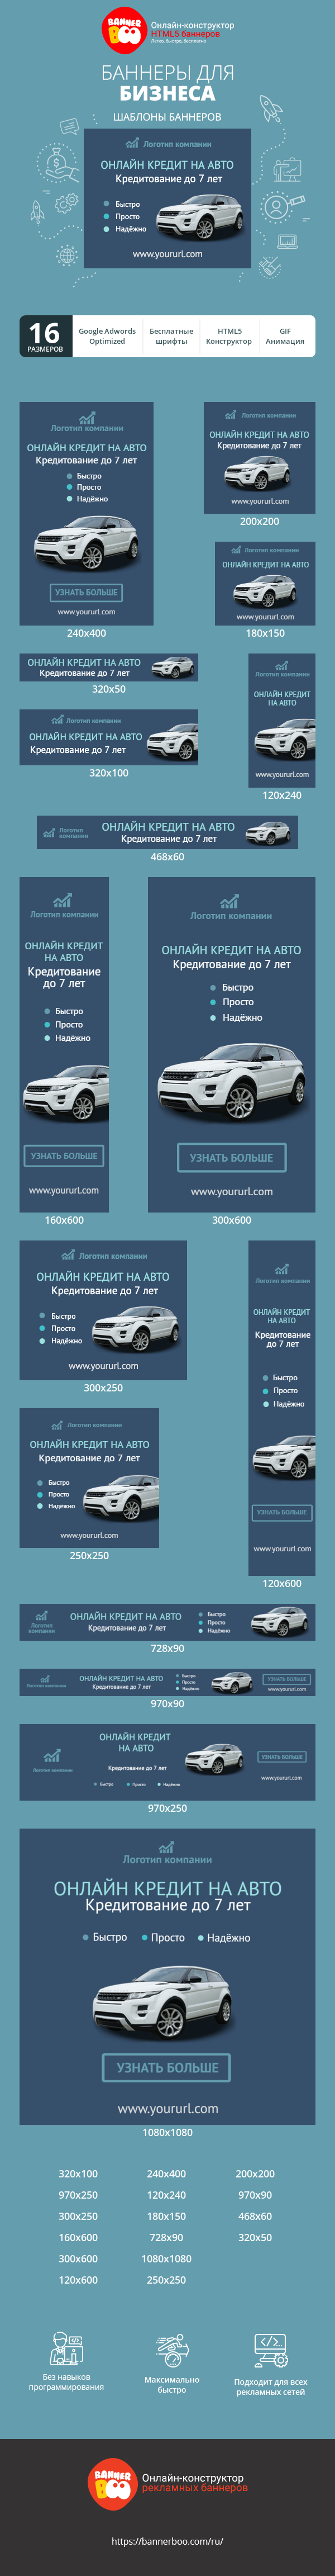 Шаблон рекламного баннера — Онлайн кредит на авто — Кредитование до 7 лет